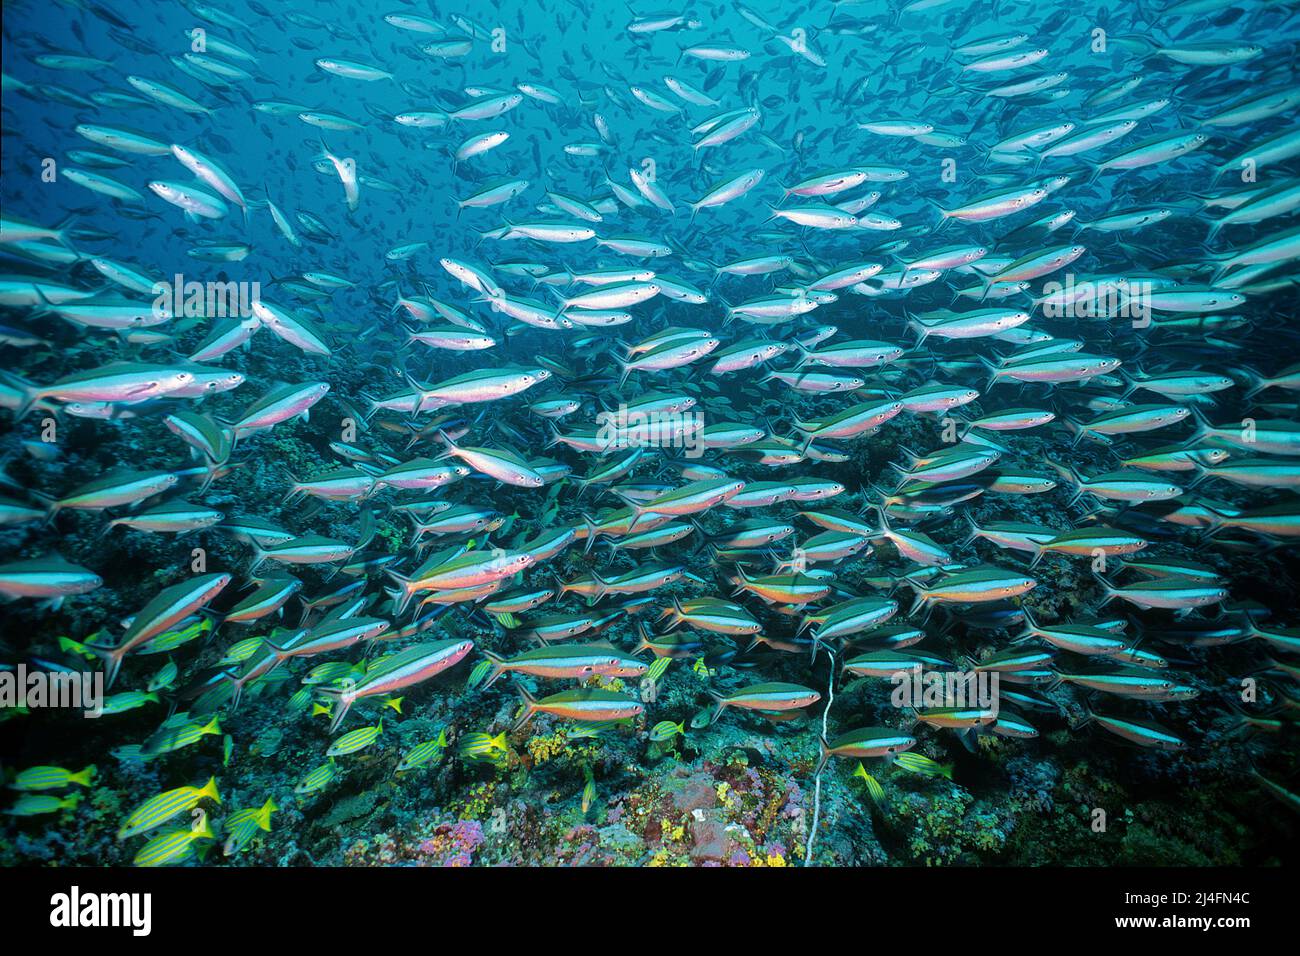 Una scuola di fusilier a bande scure, Neon fusilier (piastrelle Pterocaesio) che nuota su una barriera corallina, Ari Atoll, Maldive, Oceano Indiano, Asia Foto Stock